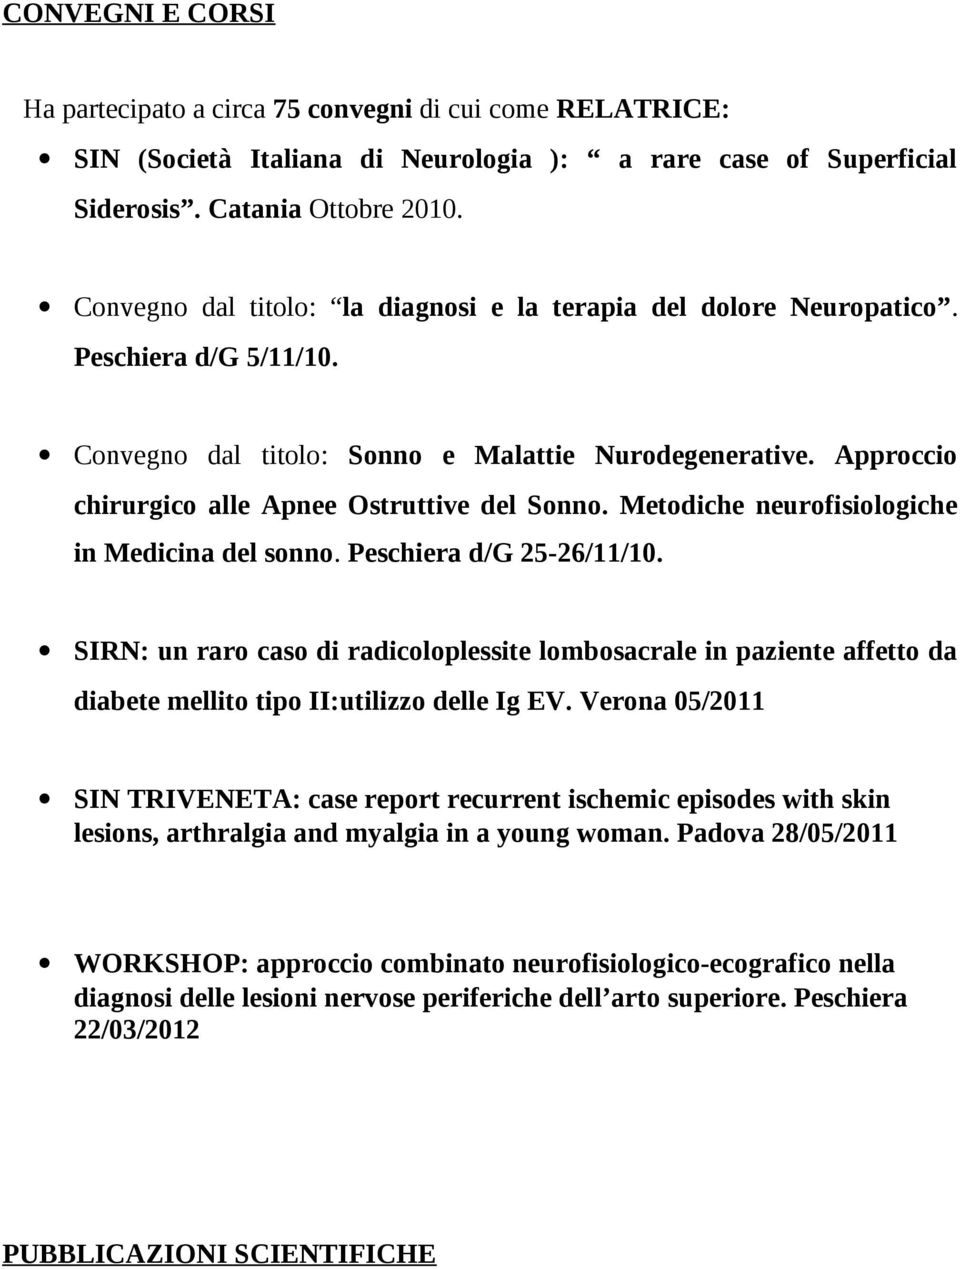 Approccio chirurgico alle Apnee Ostruttive del Sonno. Metodiche neurofisiologiche in Medicina del sonno. Peschiera d/g 25-26/11/10.